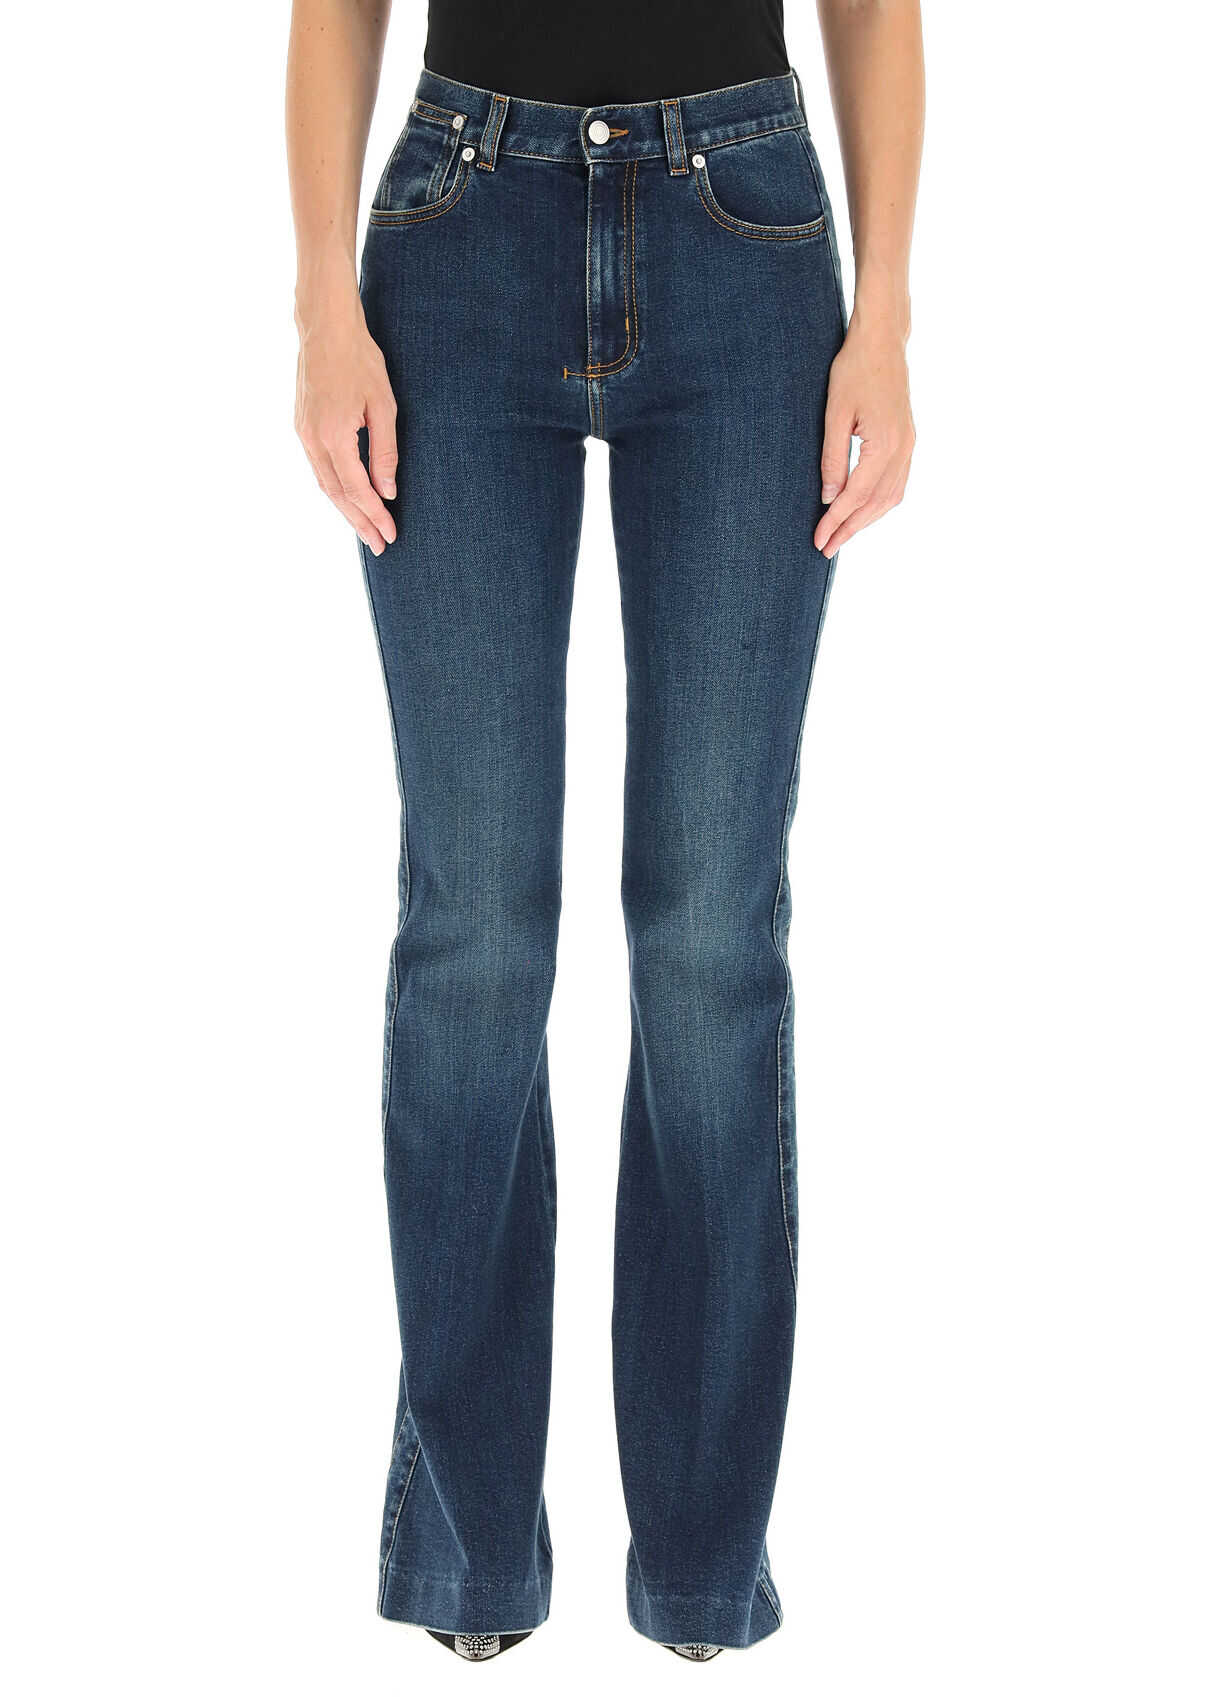 Alexander McQueen High Waist Flare Jeans 628062 QMABH DARK BLUE WASH